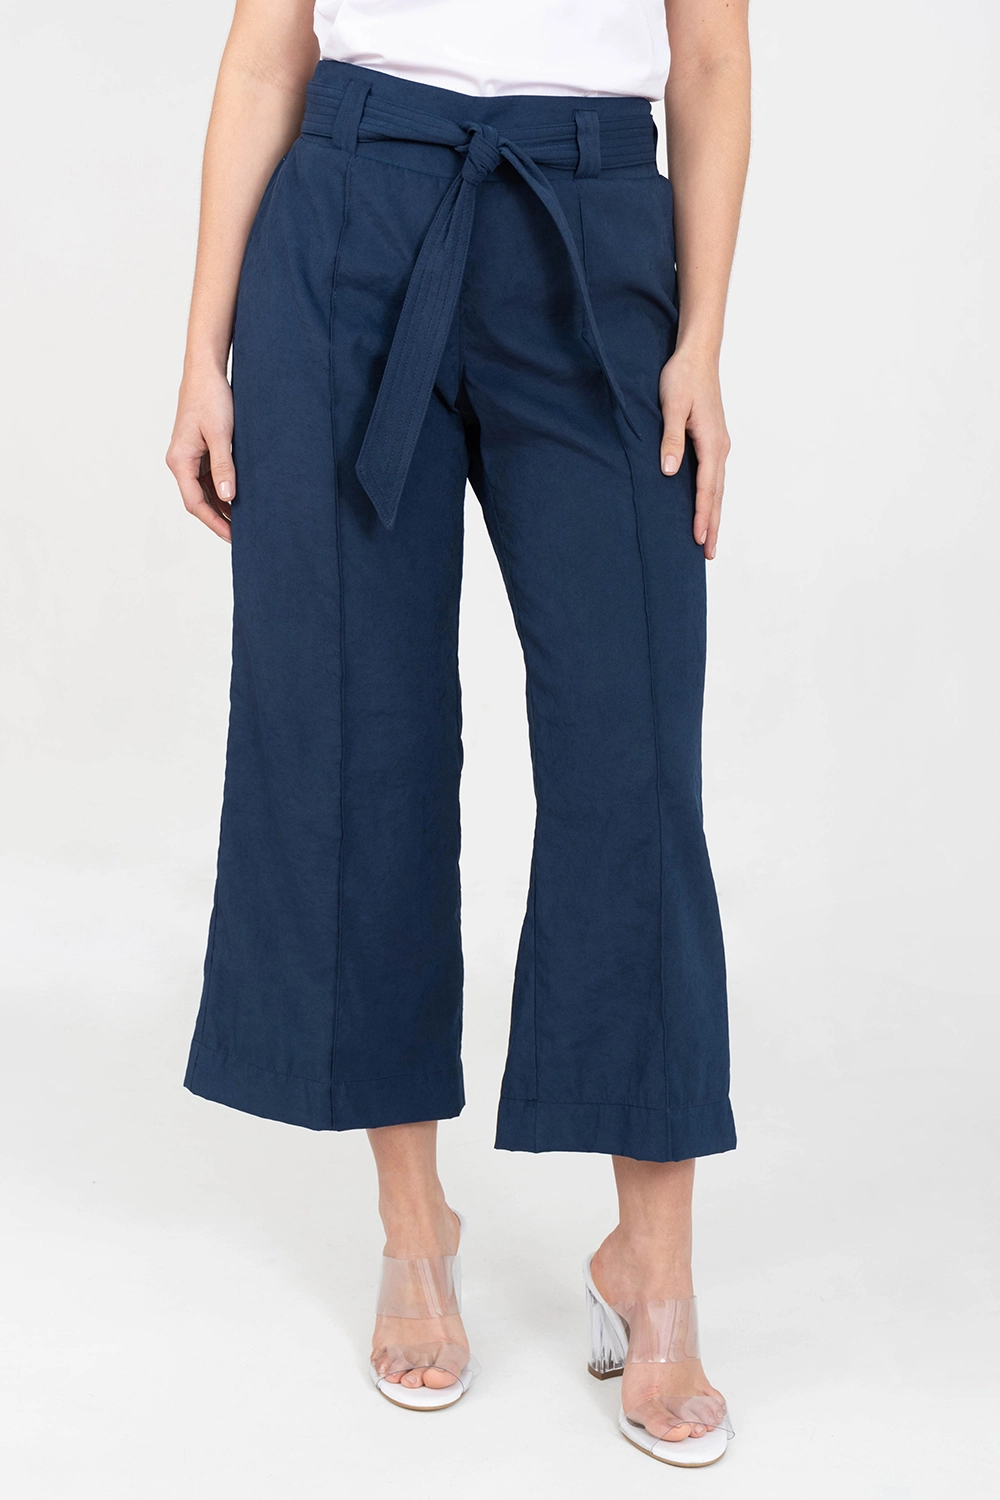 Pantalón culotte con vena ribetes y cinturón. Azul oscuro talla 14